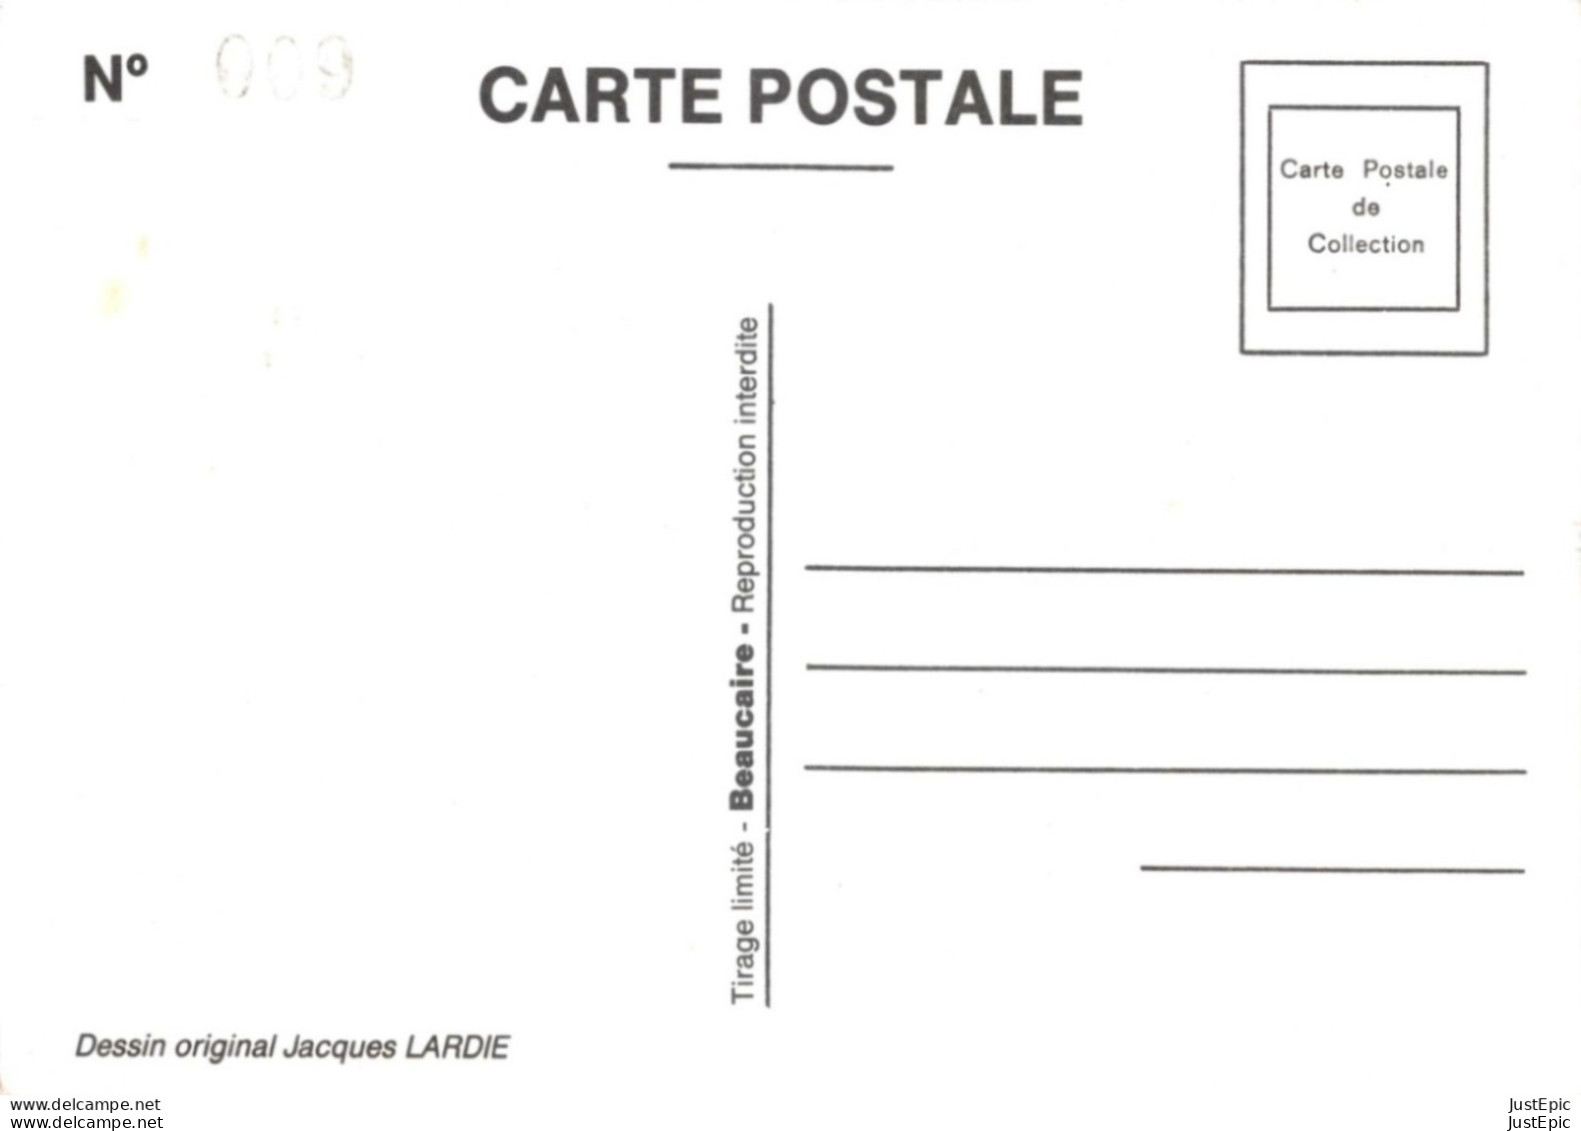 "ASNIERES REJOUE STRAUSS..." - LARDIE Jihel Tirage 85 Ex. Caricature Politique Franc-maçonnerie CPM - Asnières-sur-Oise